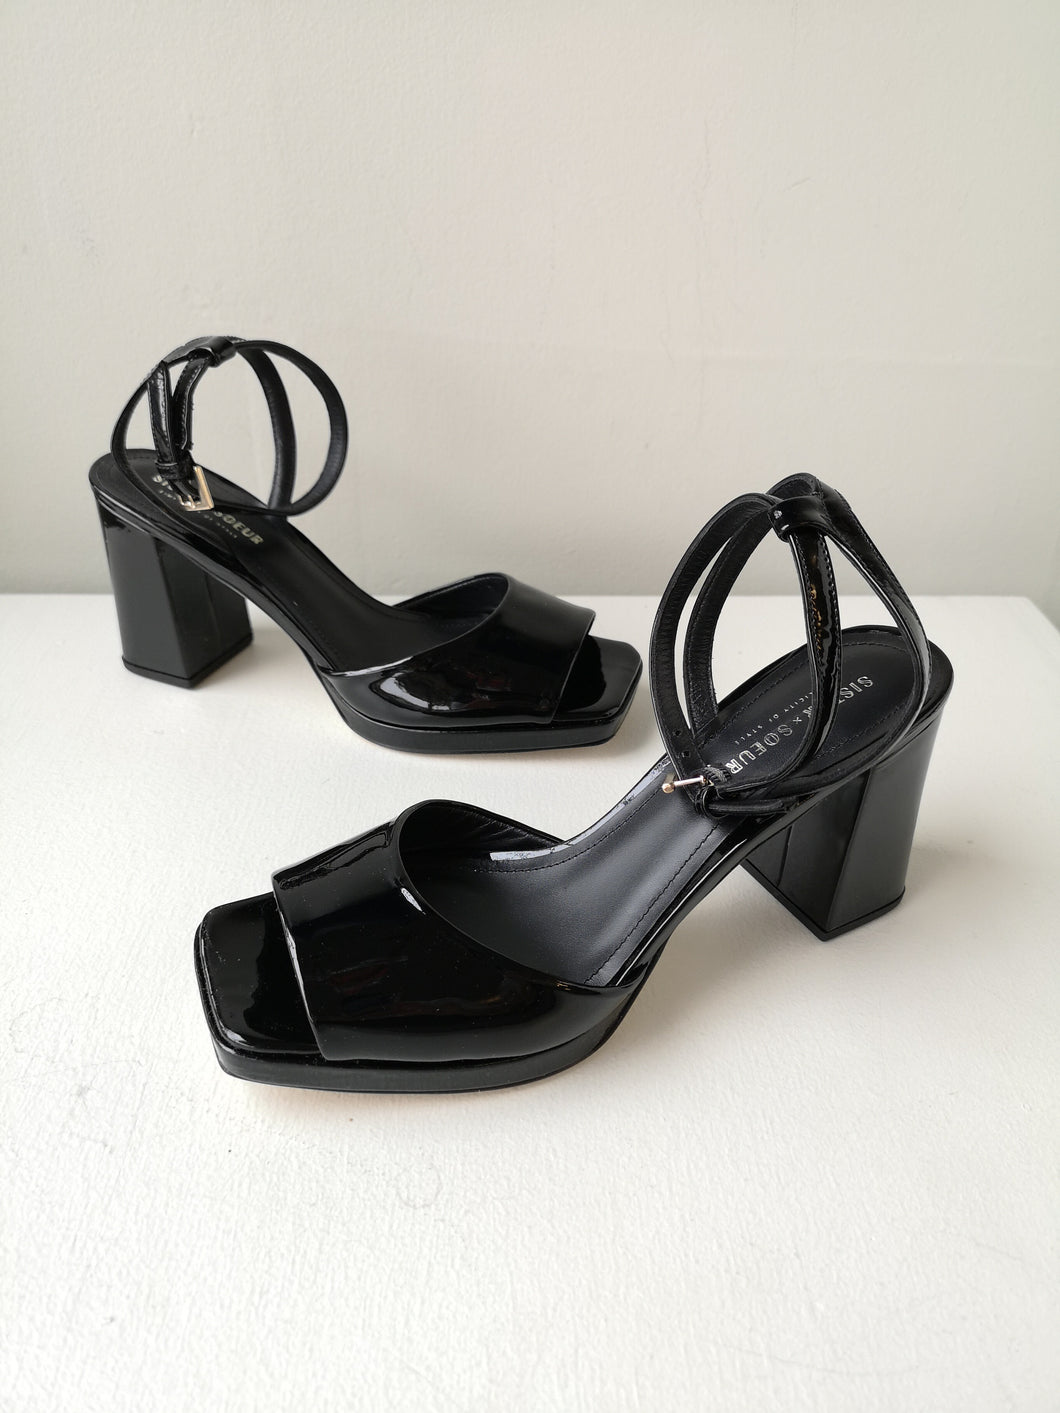 Sister x Soeur Elyse Sandal Heels - Black Patent